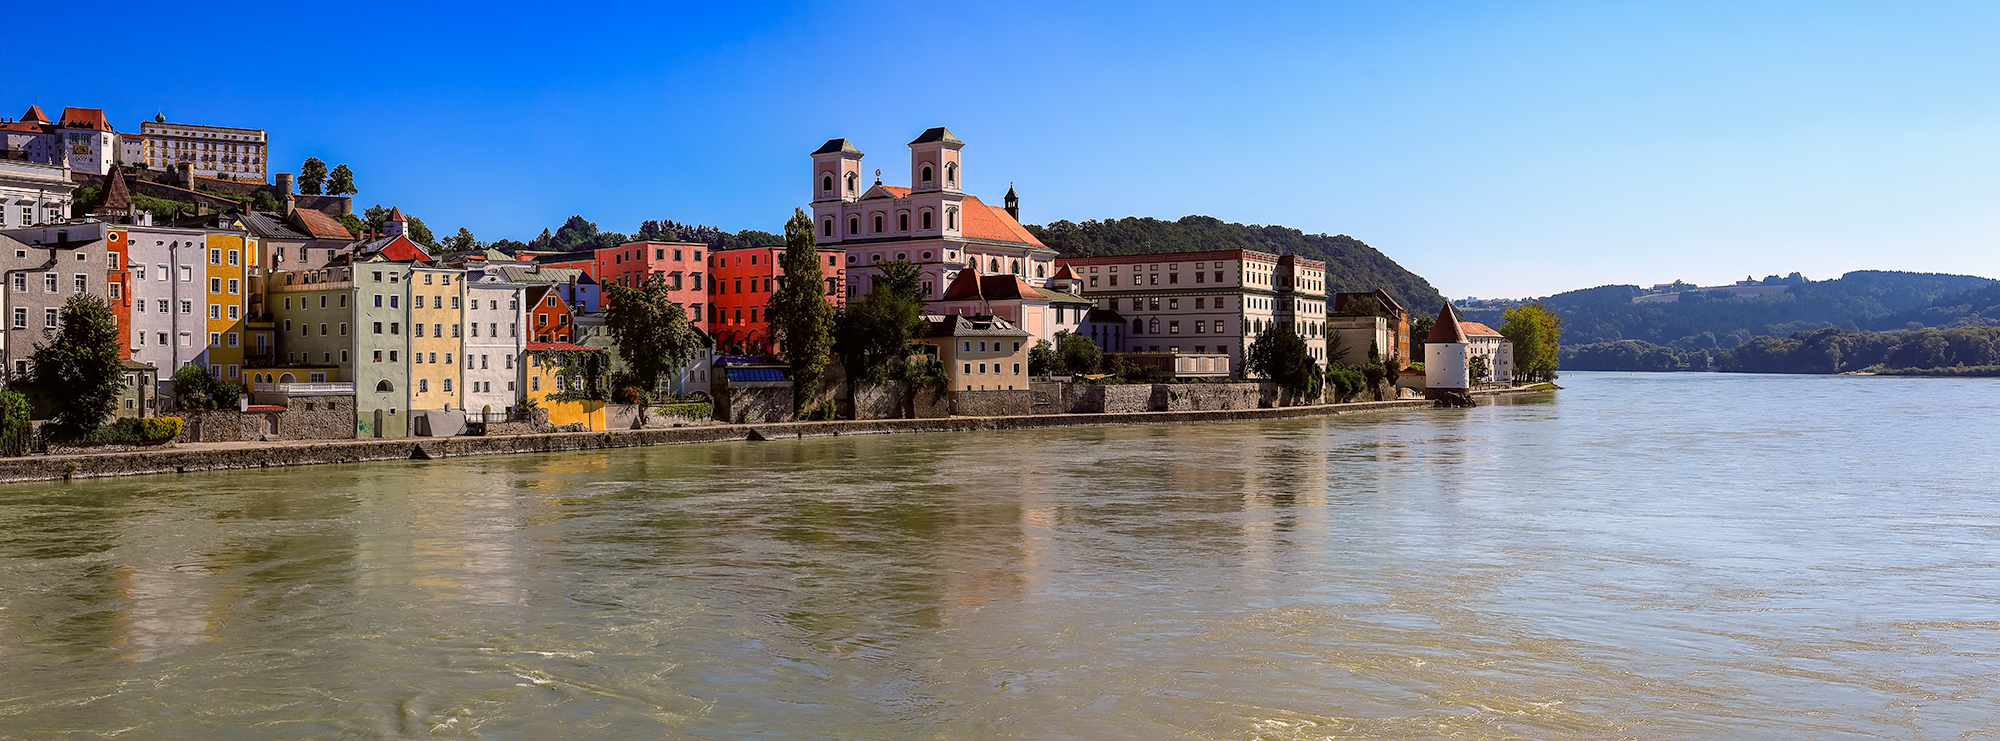 2016 - Passau - Germany (Panorama)